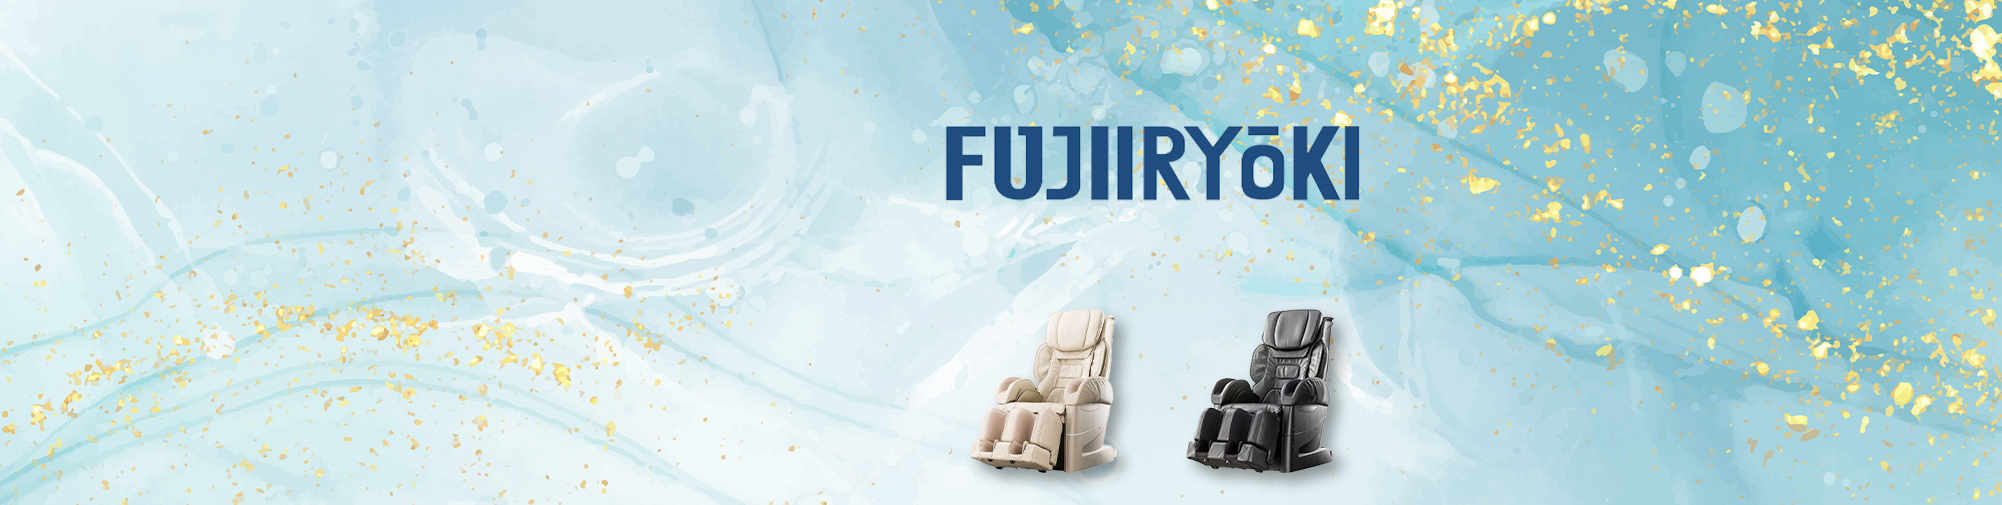 Fujiiryoki - 按摩椅的历史 | 按摩椅世界